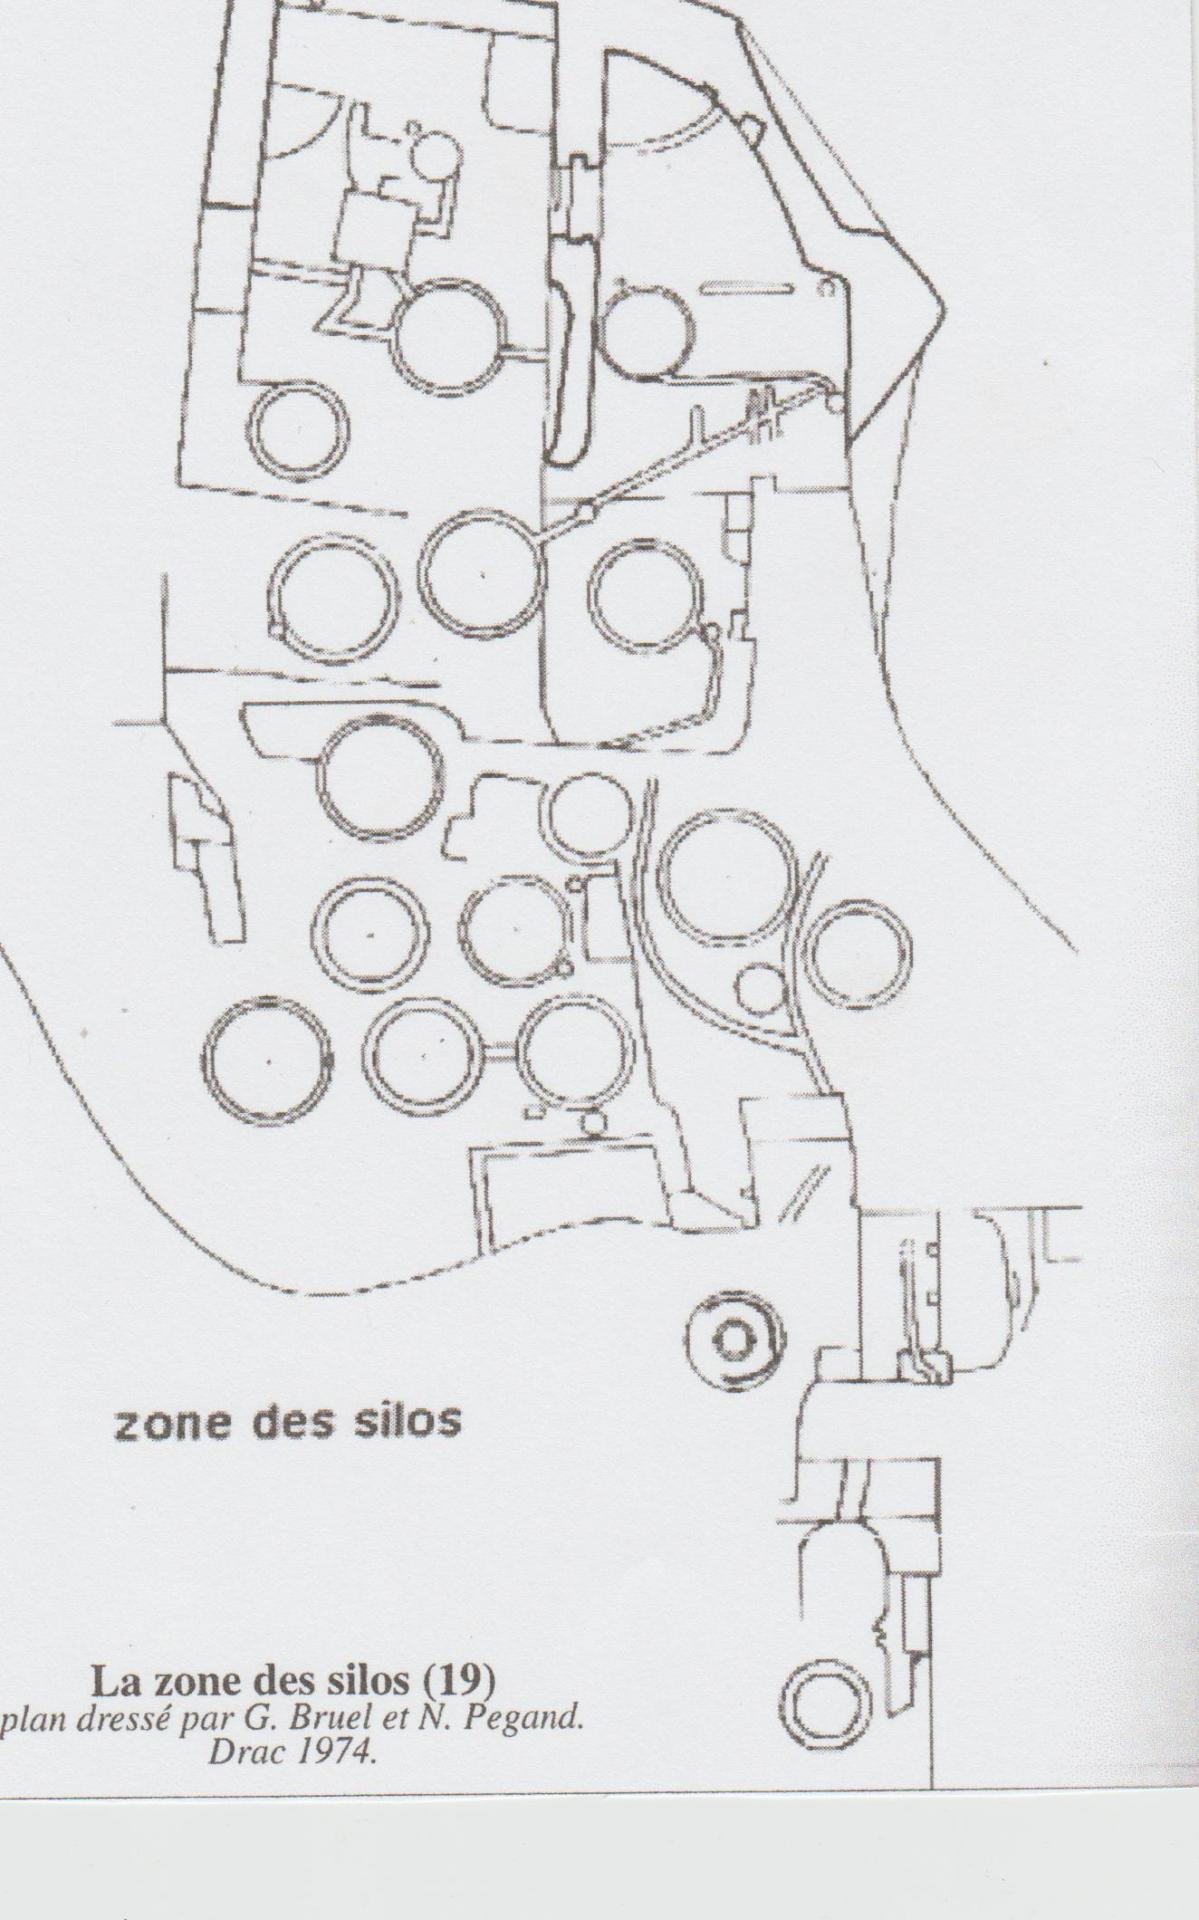 Fort de buoux photo plan des silos 001